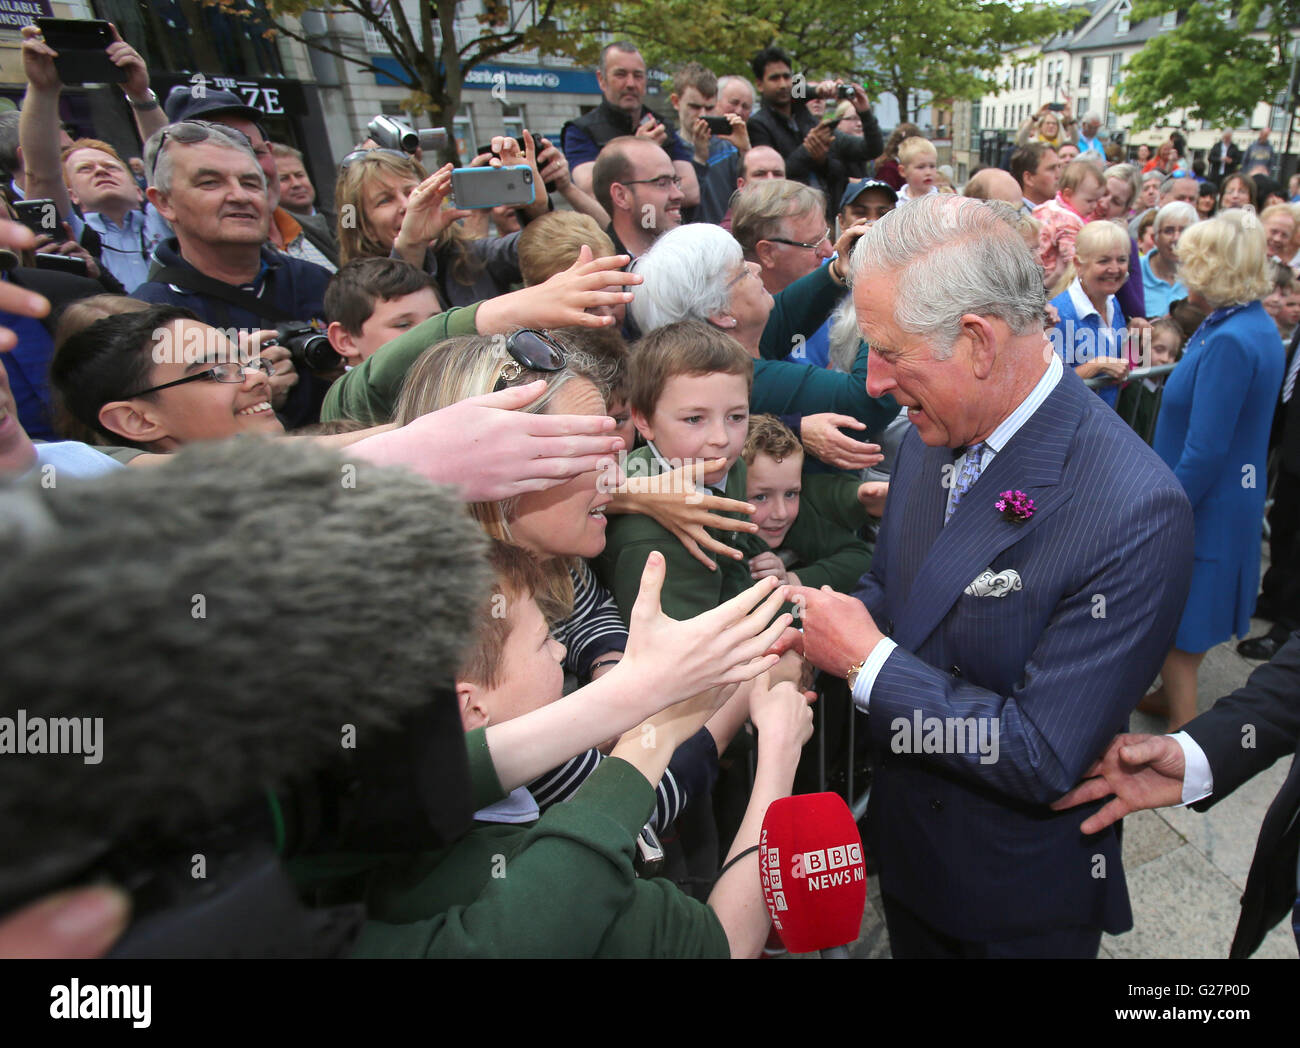 Le Prince de Galles est accueilli par des sympathisants comme ils visitent la ville de Donegal en République d'Irlande dans la dernière soumission royale pour solidifier les relations anglo-irlandaises transformées. Banque D'Images